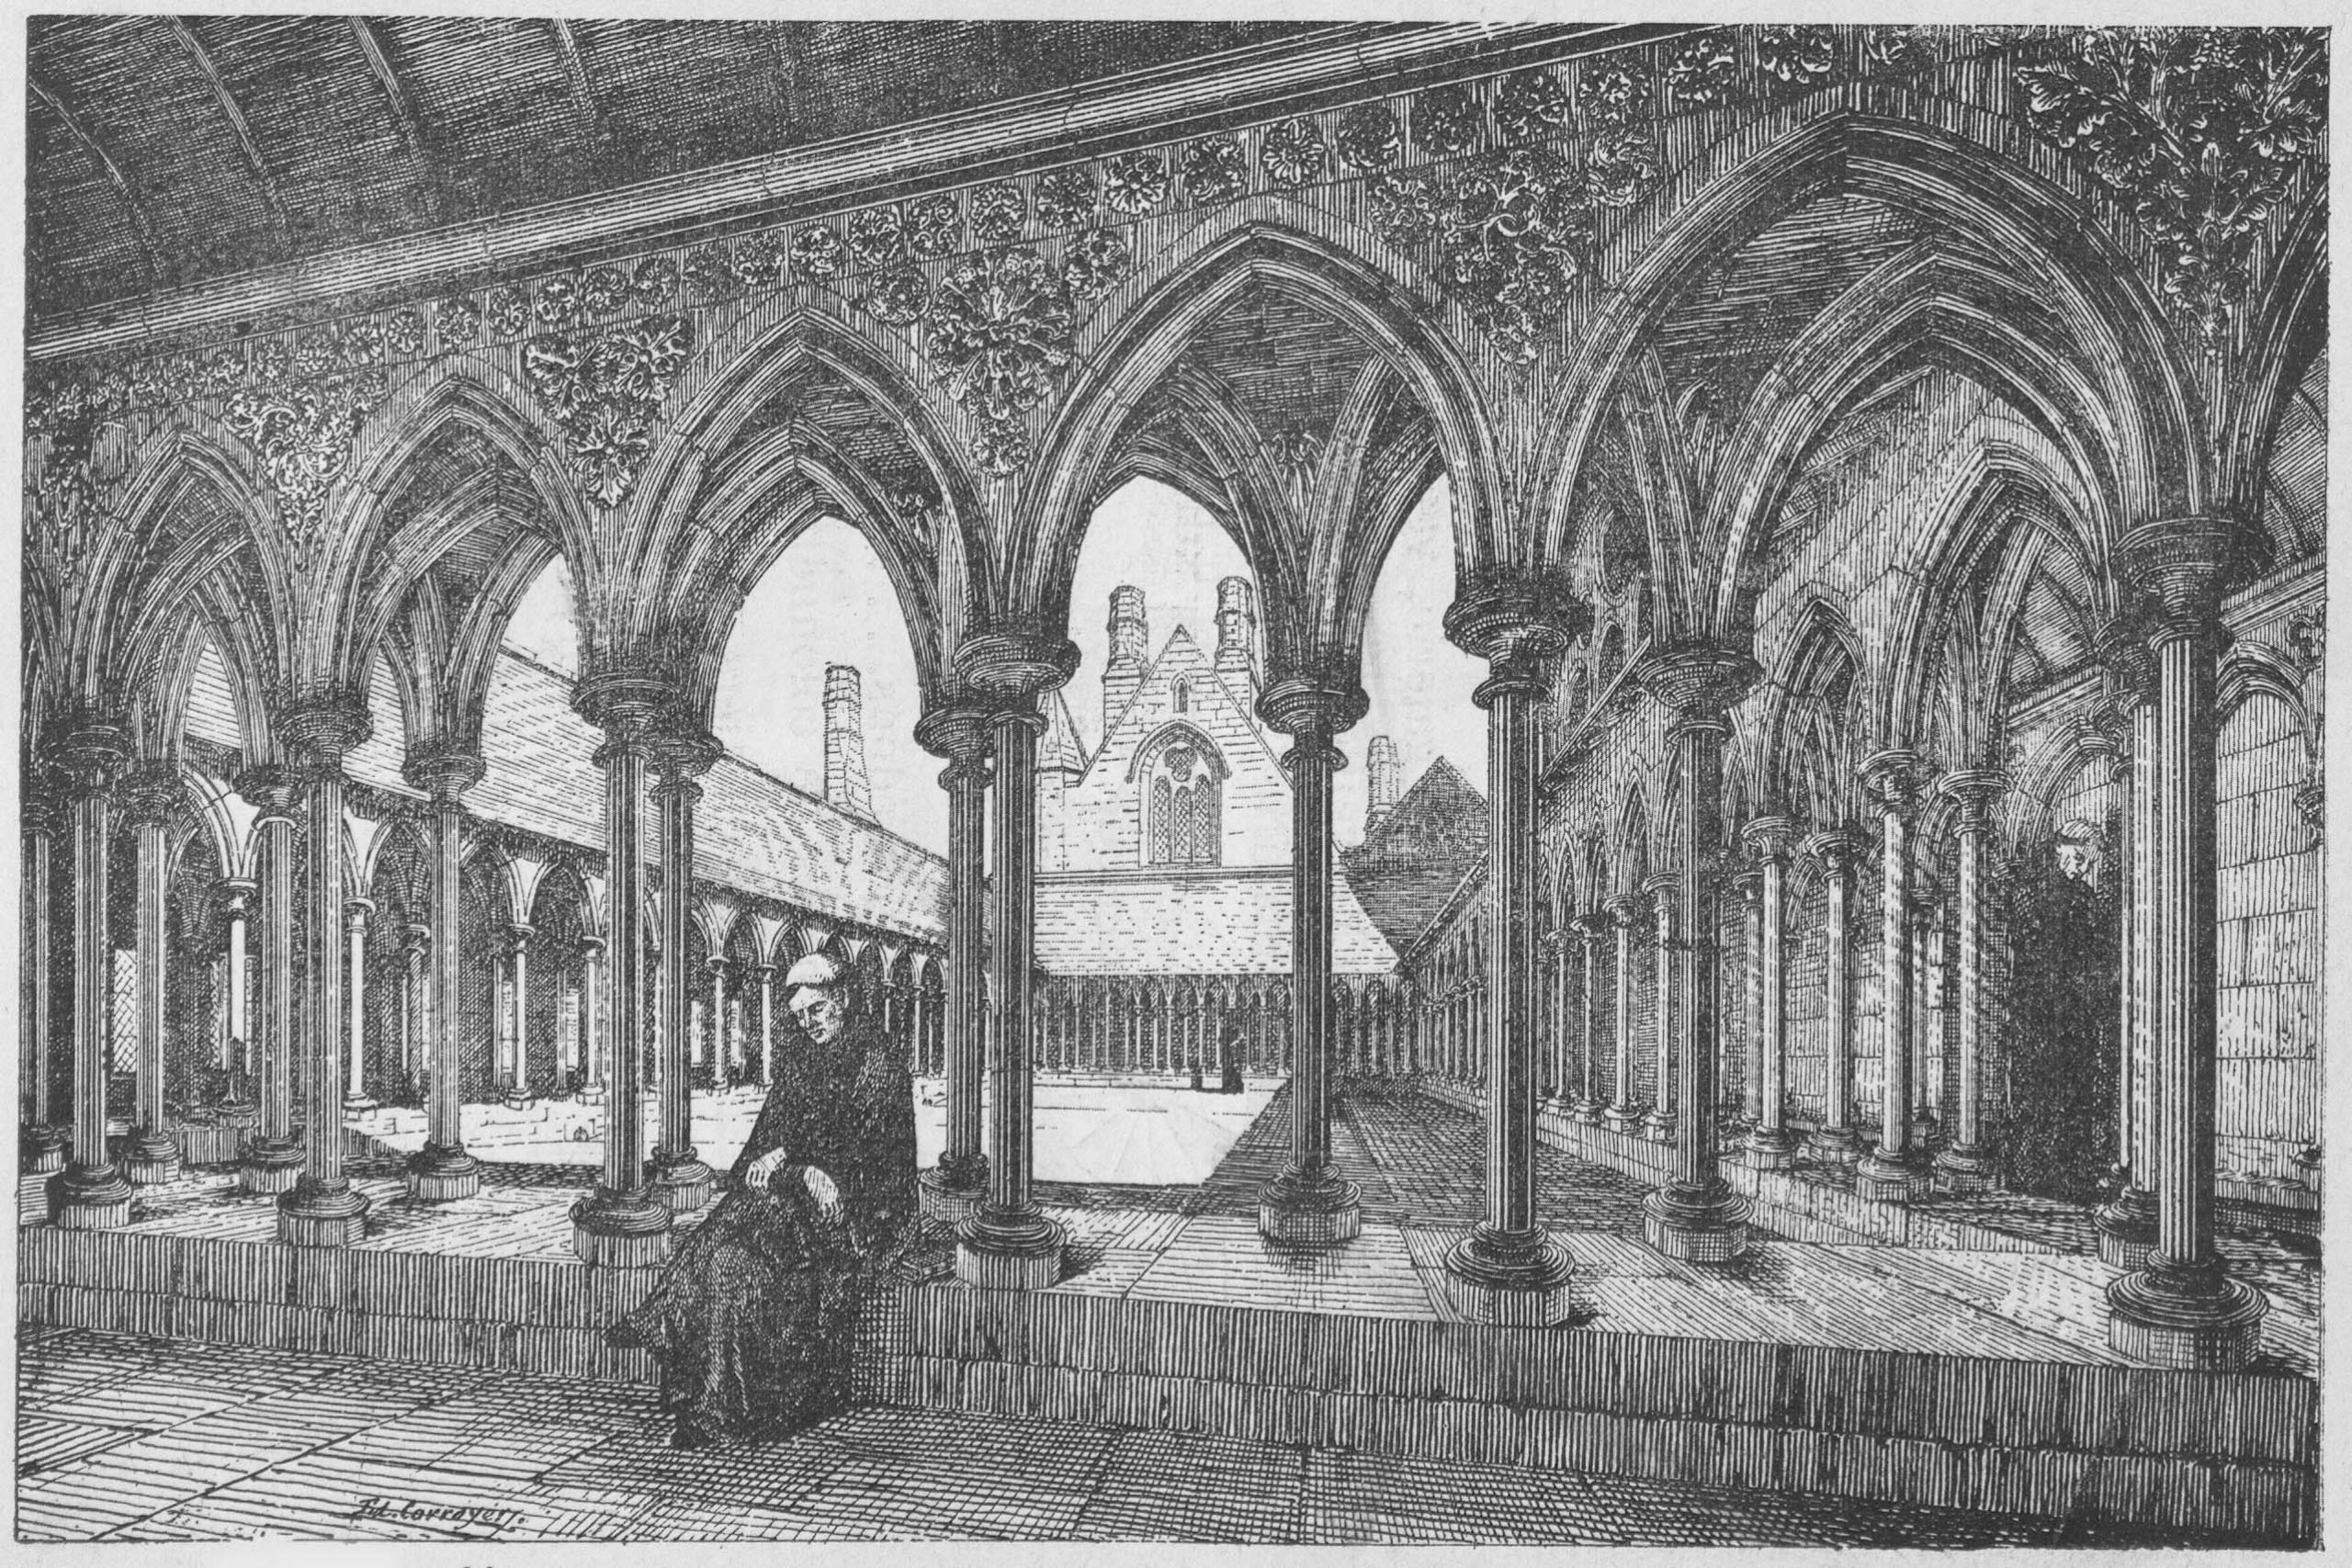 Mont-Saint-Michel Abbey in the past